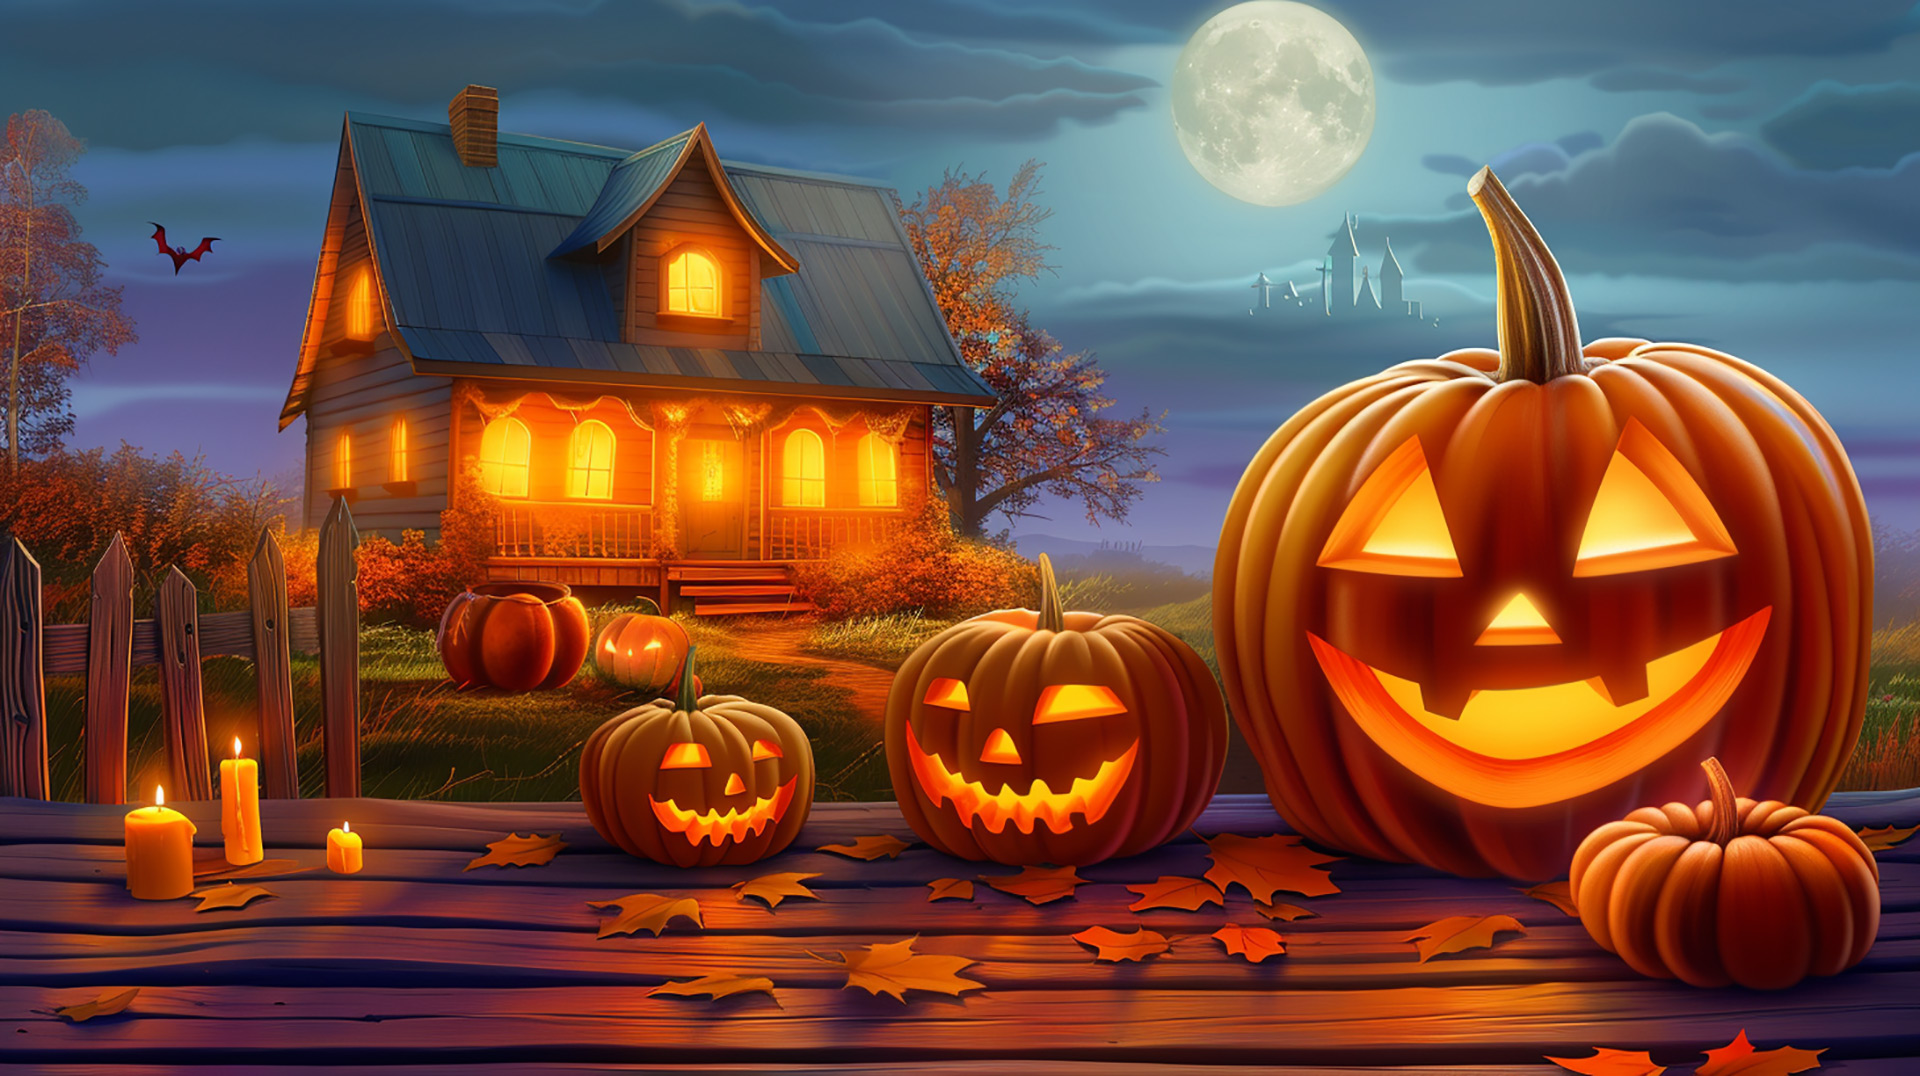 Gothic Halloween Scenes: Free Desktop Wallpaper